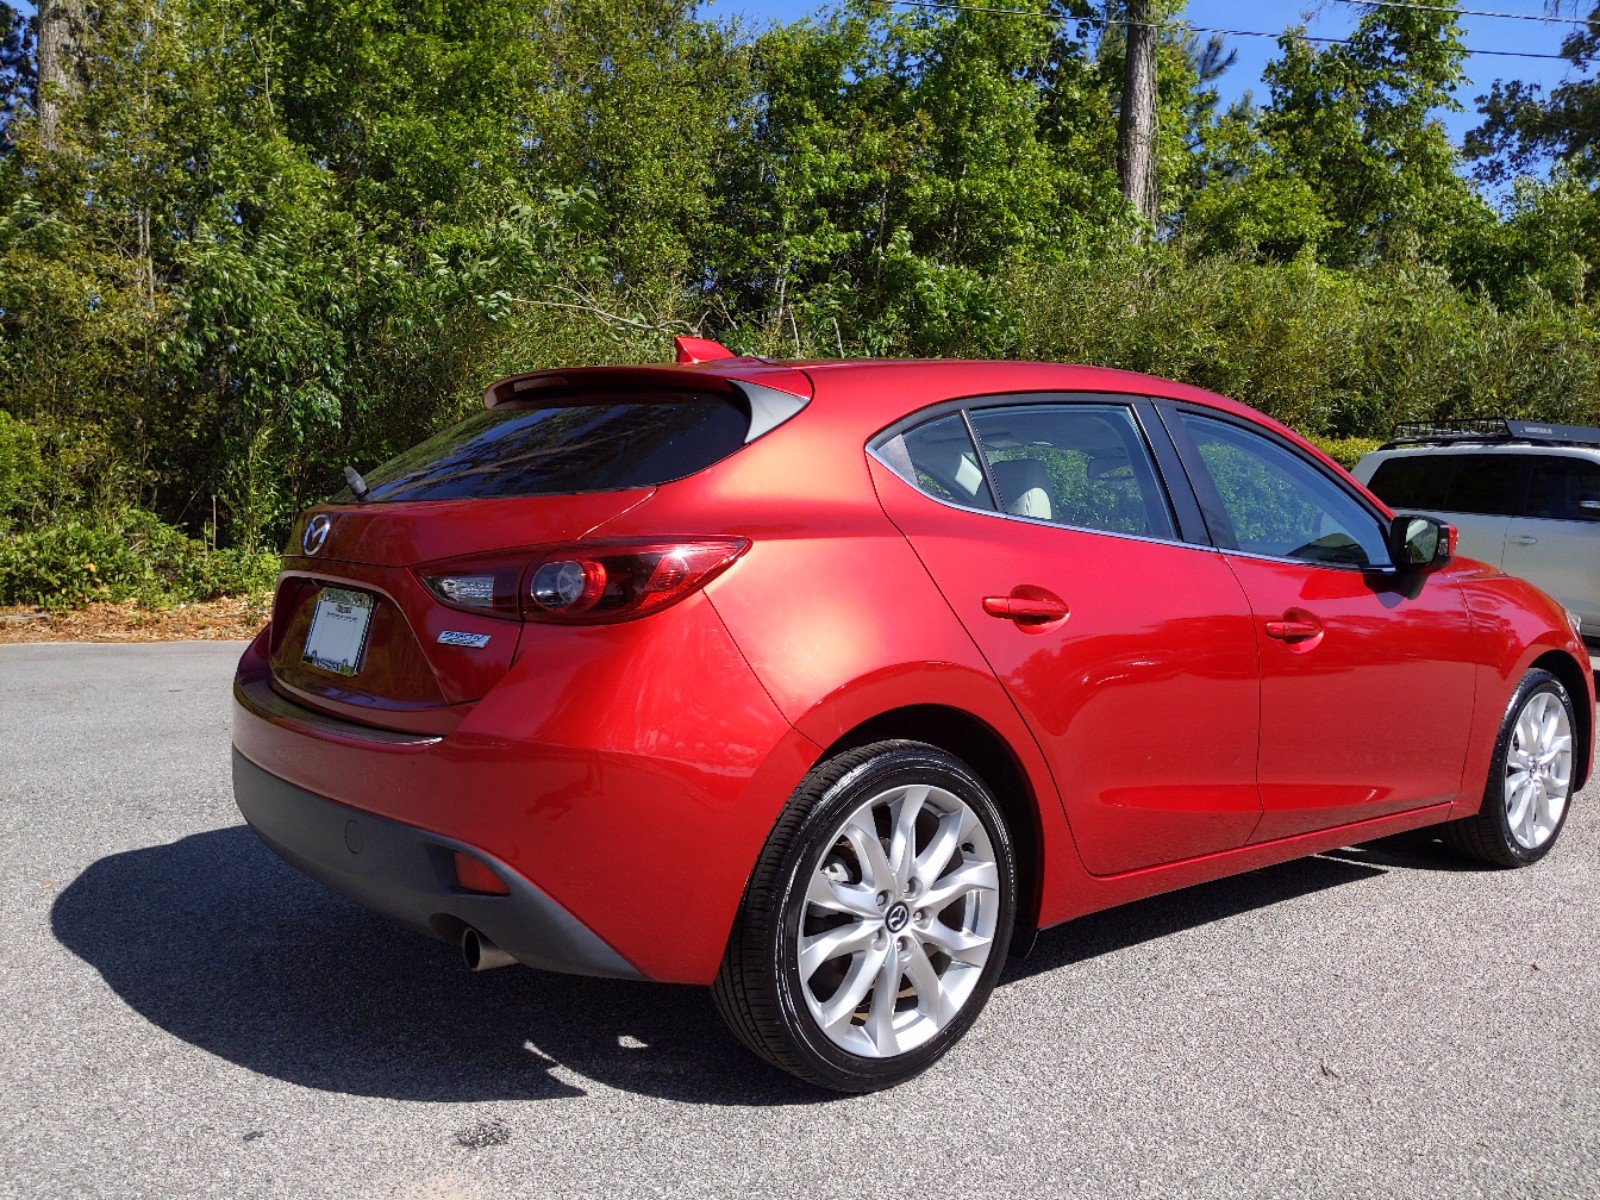 PreOwned 2014 Mazda Mazda3 s Grand Touring Hatchback in